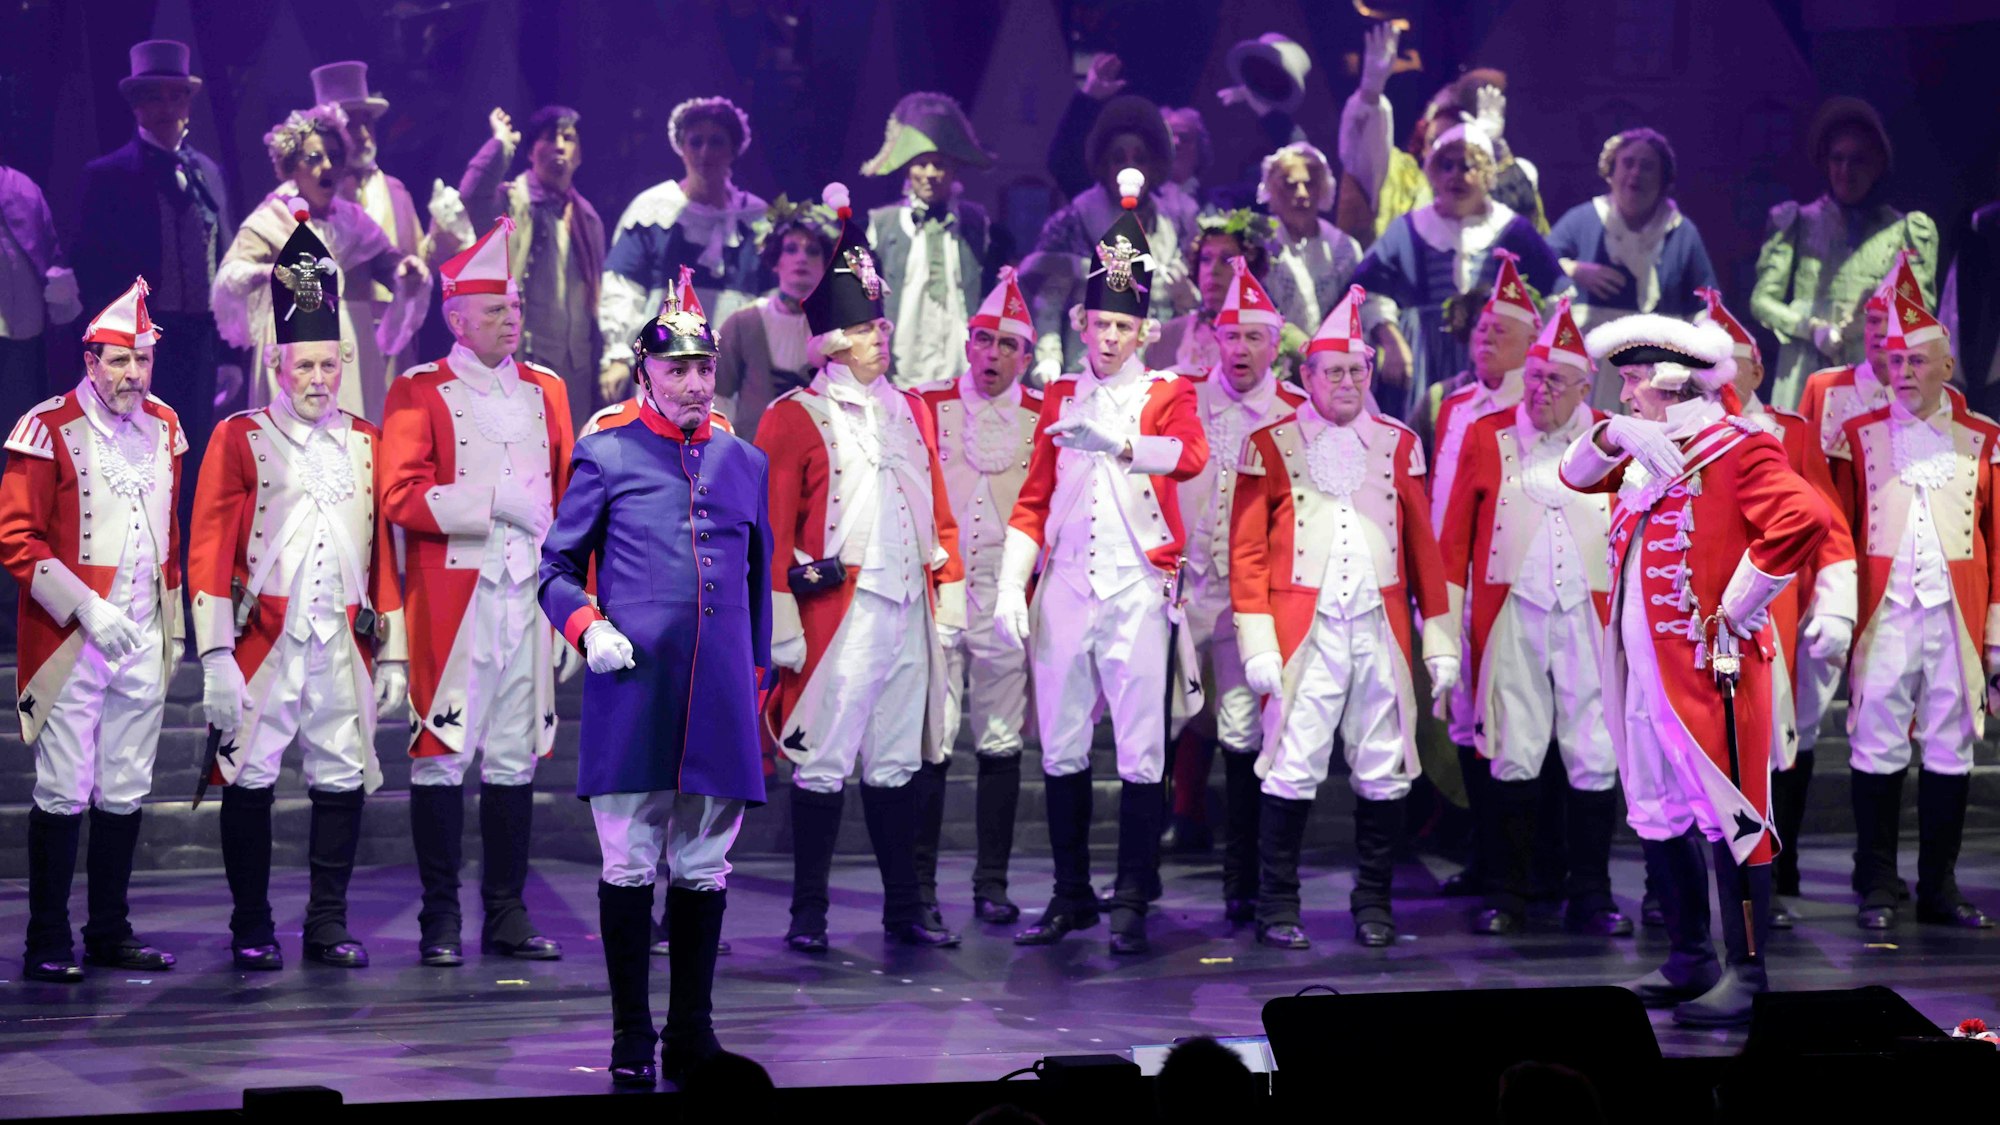 Beim Diverteissementchen stehen viele Männer in rot-weißen Uniformen auf der Bühne, vorne ein "Preuße" in blau-roter Uniform.